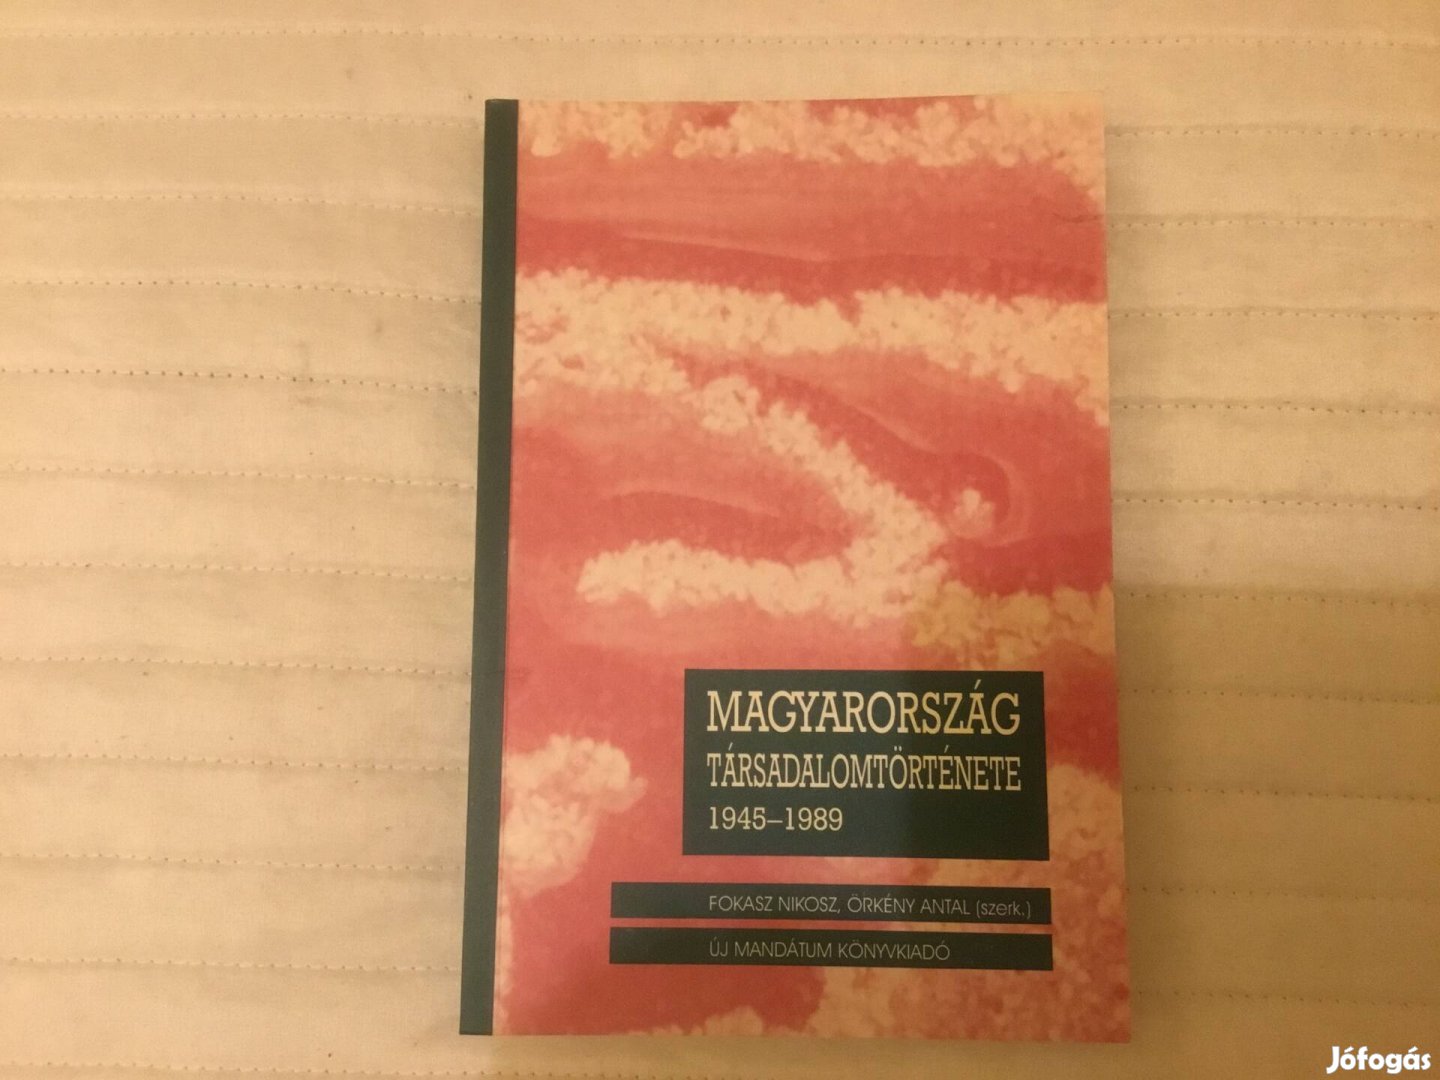 Magyarország társadalomtörténete 1945-1989